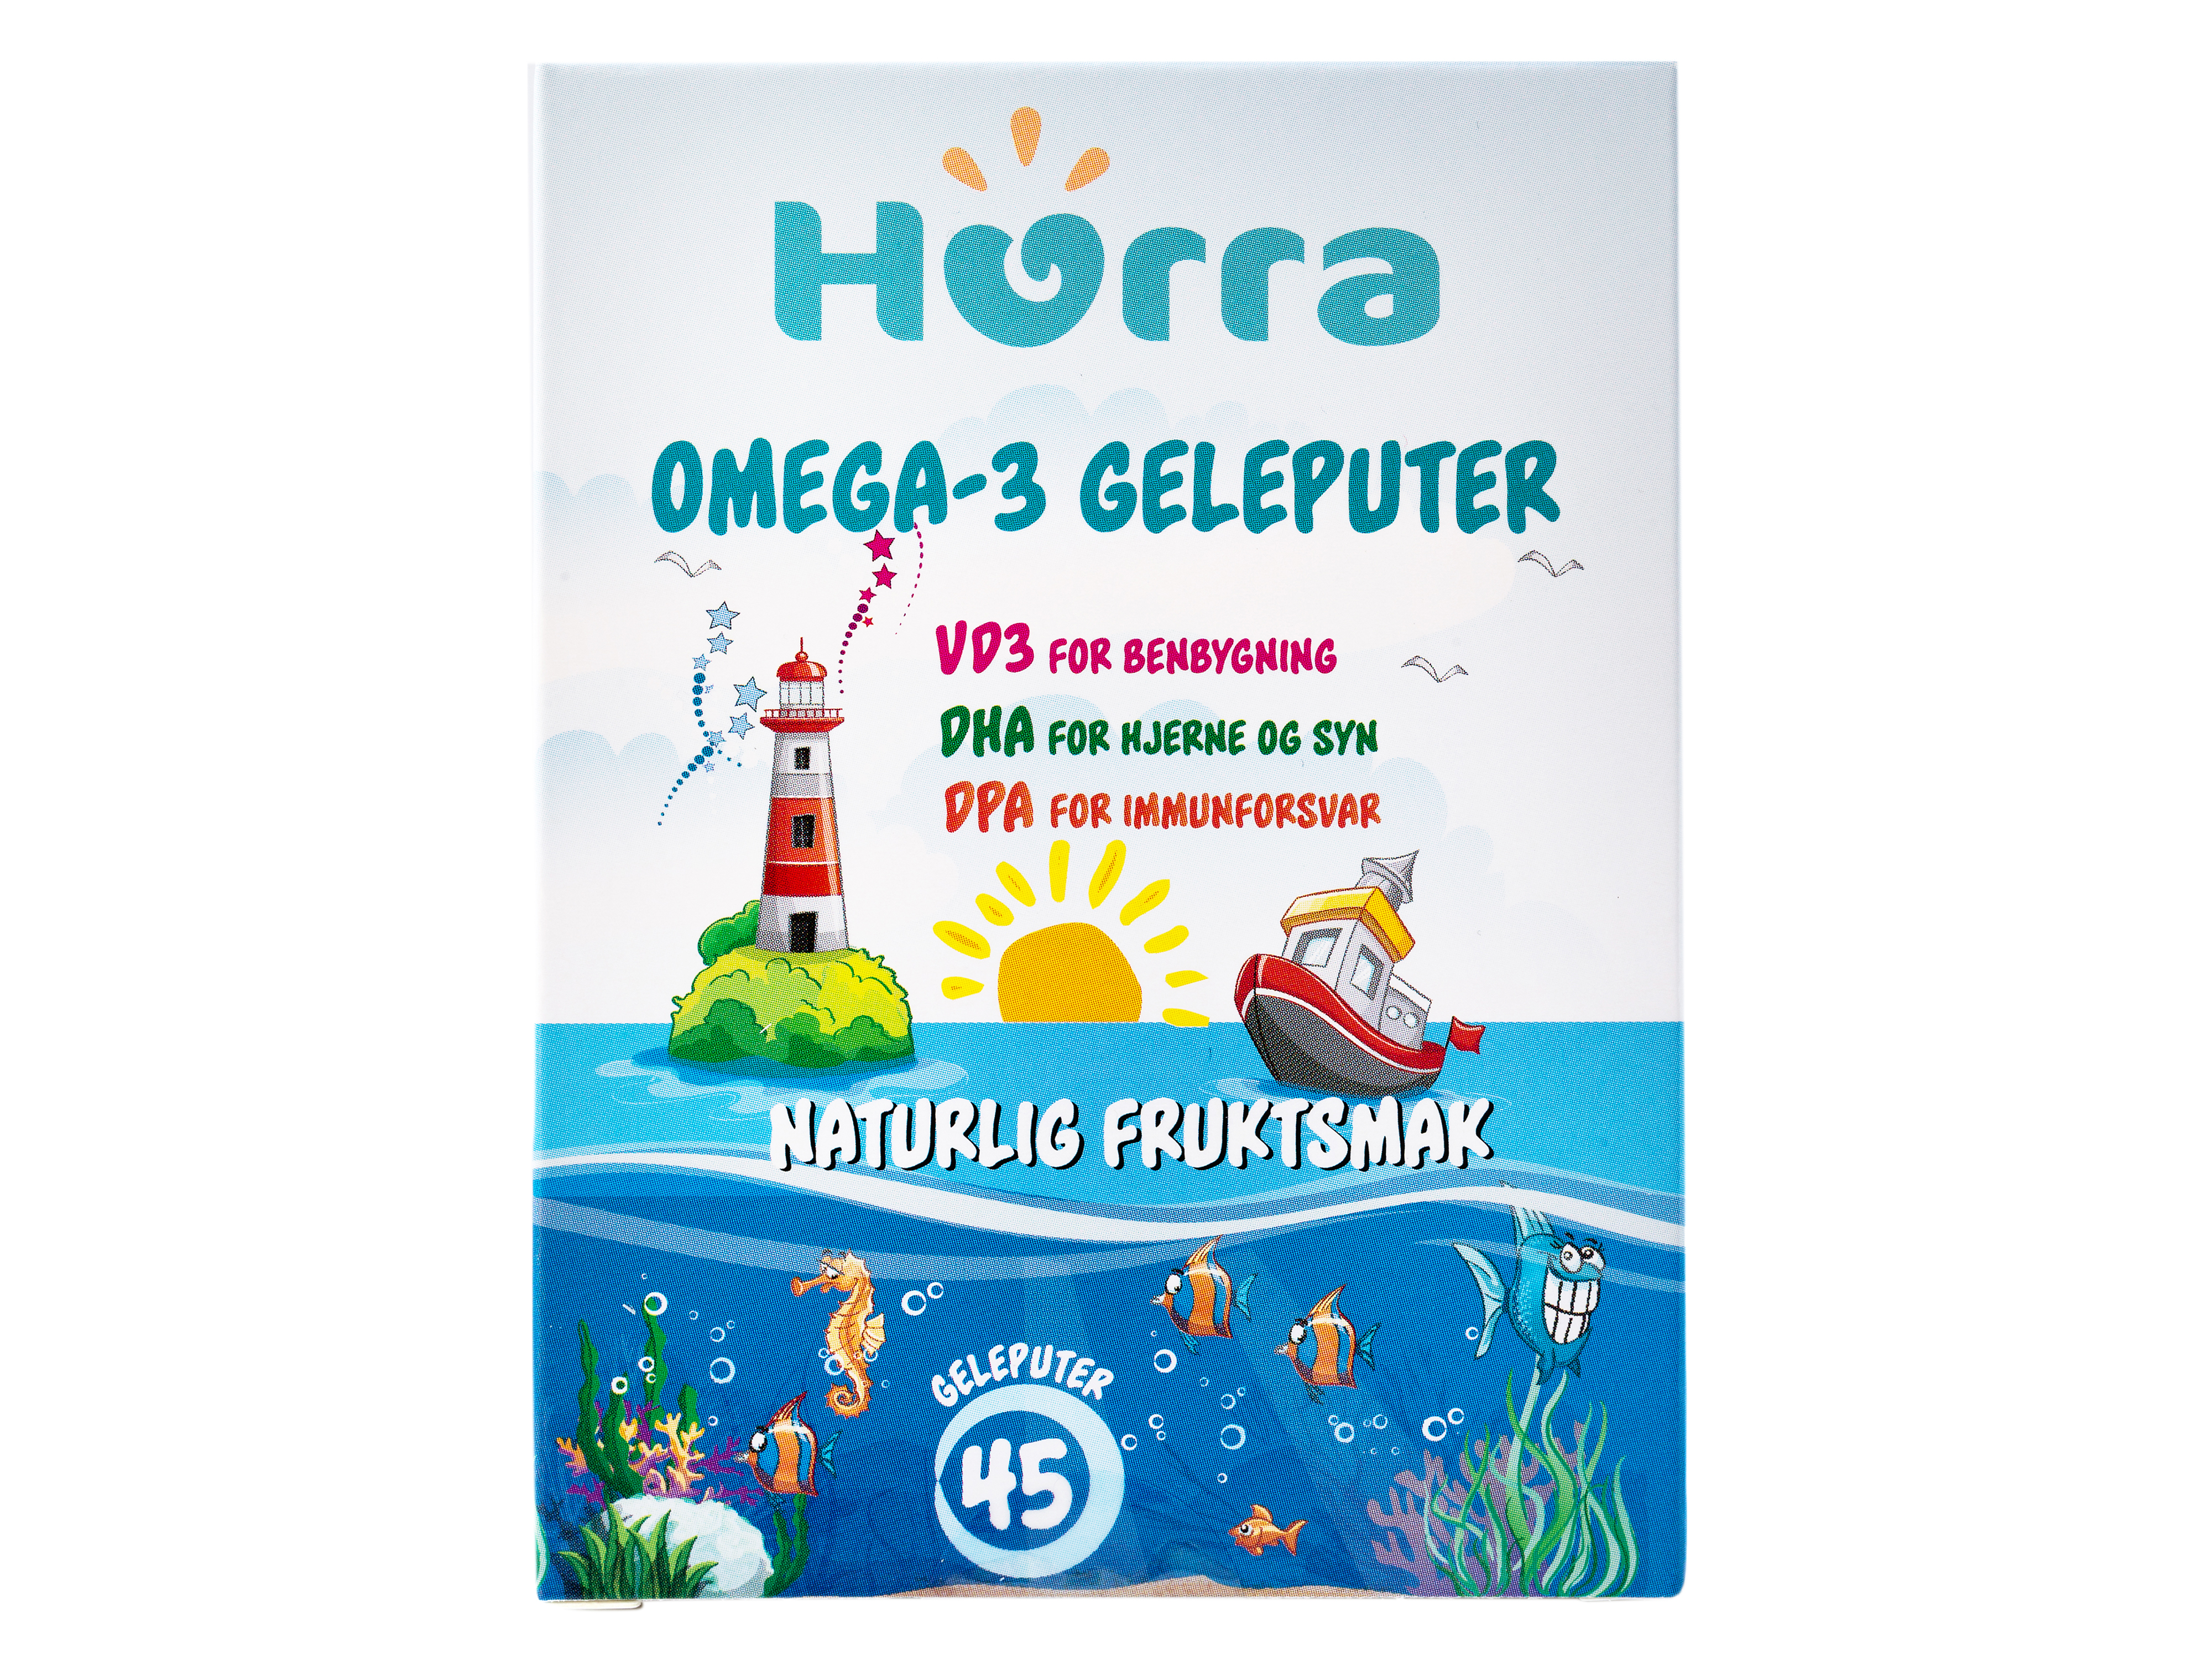 Hurra Omega-3 Geleputer, 45 stk.